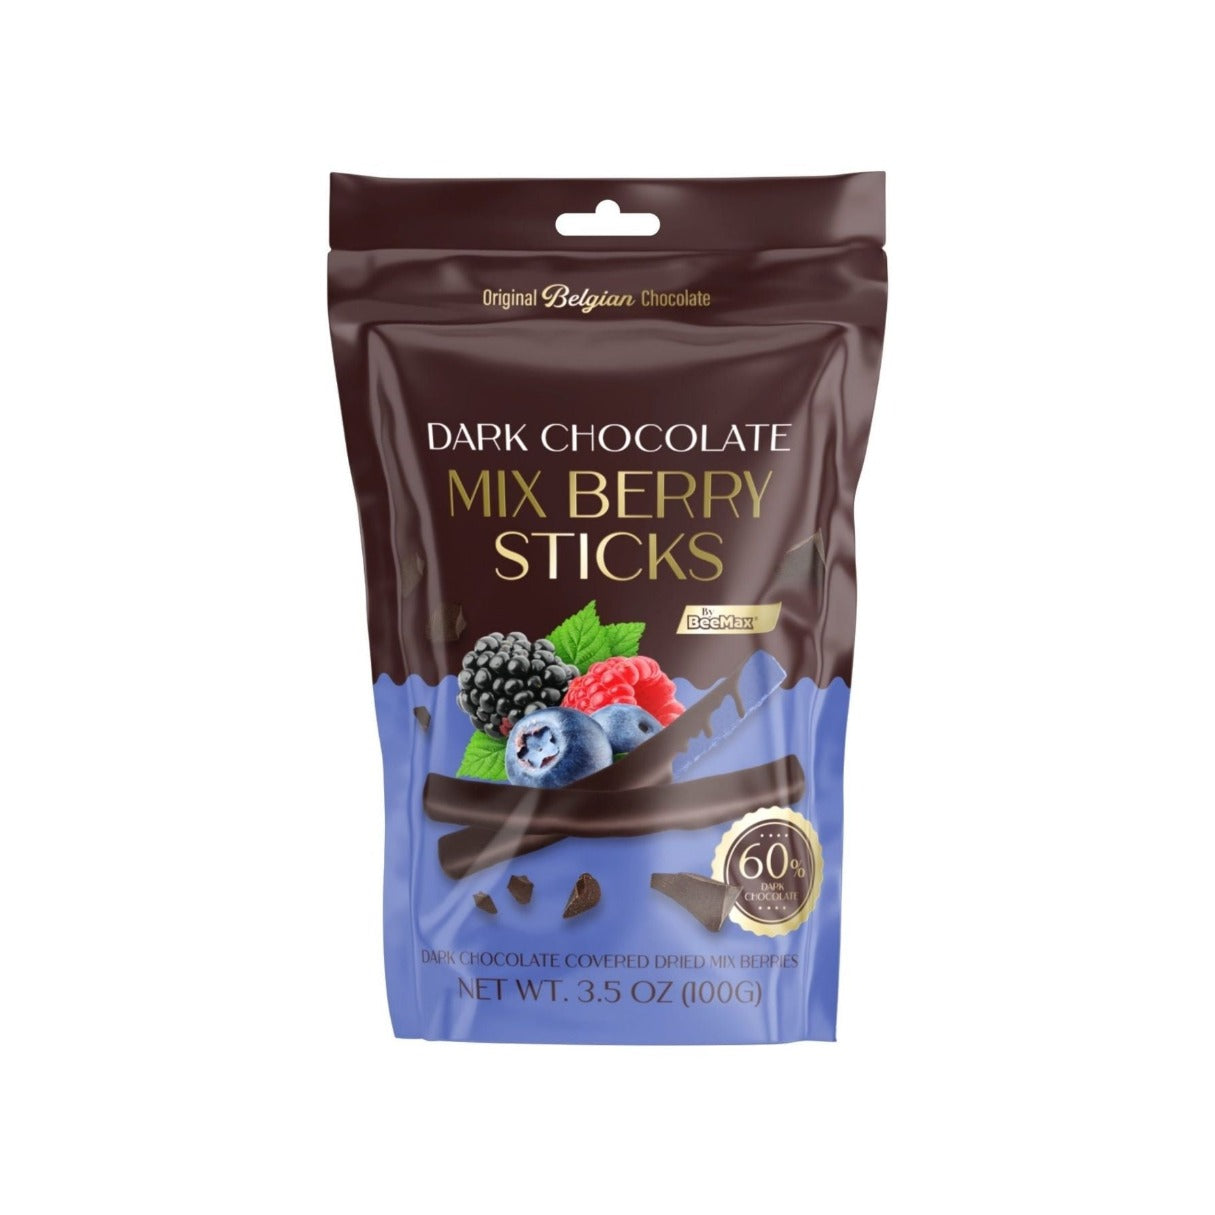 Beemax Dark Chocolate Covered Mix Berry Sticks 3.5oz - 12ct